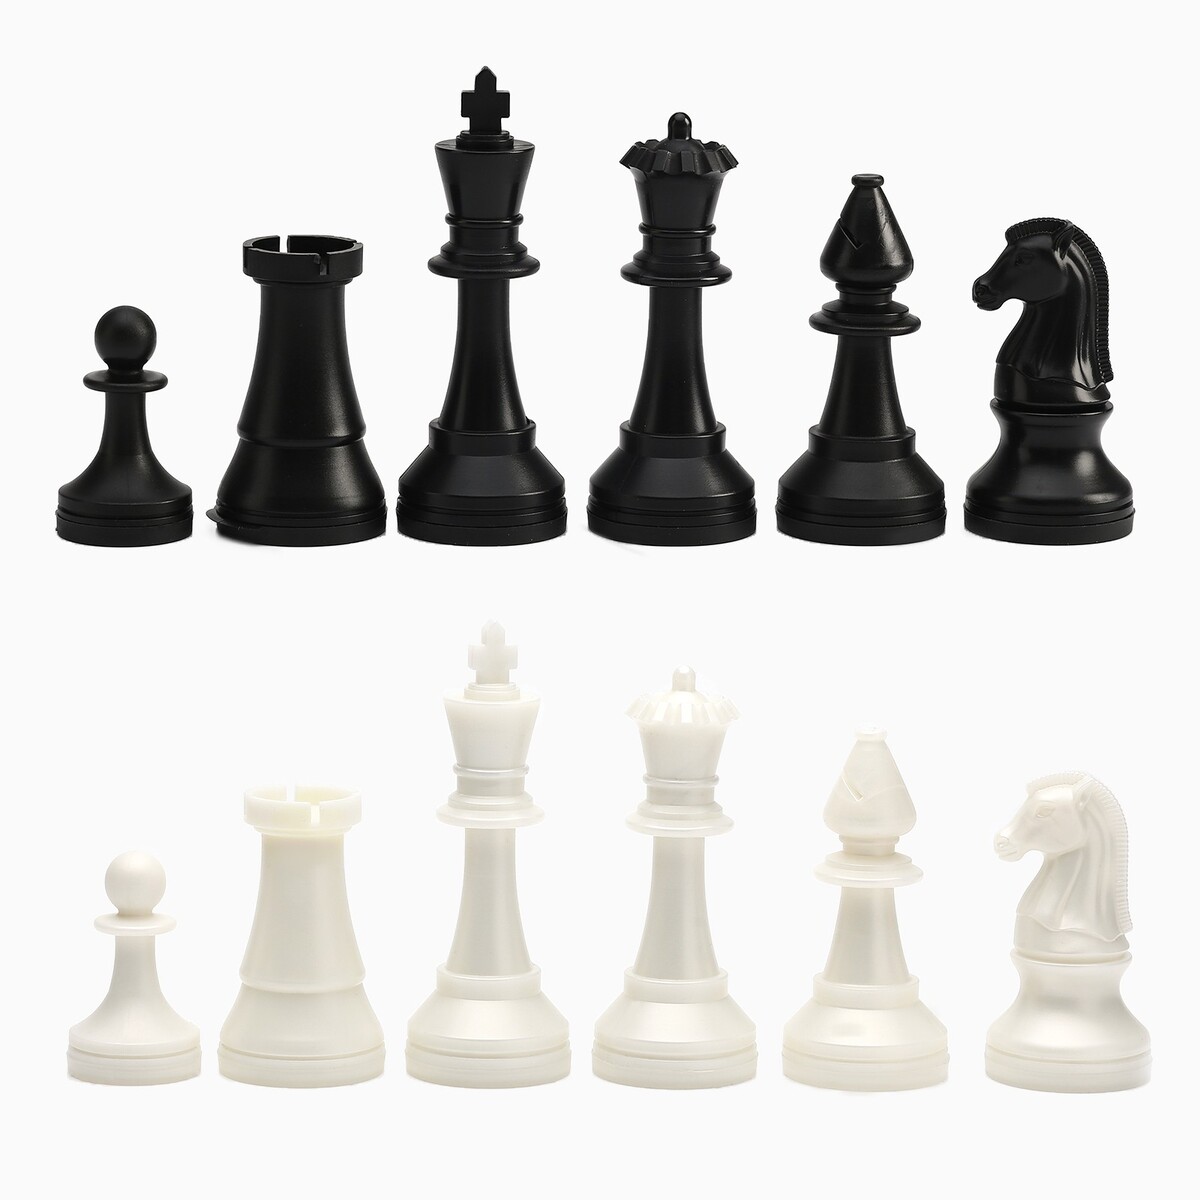 Шахматные фигуры турнирные, пластик, король h-10.5 см, пешка h-5 см шахматные фигуры